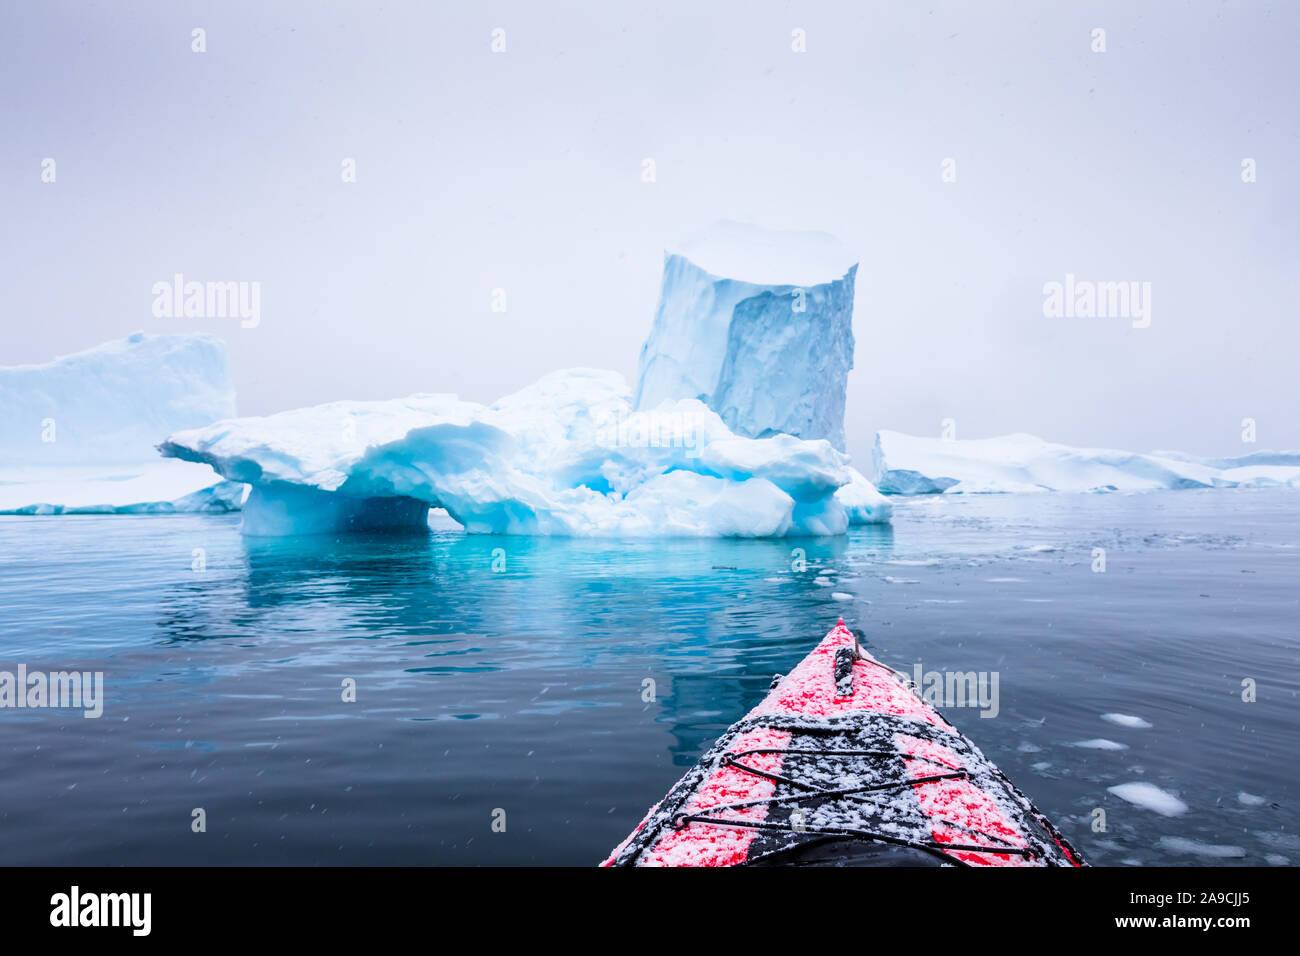 Kajak zwischen Eisbergen auf einem roten Kajak in der Antarktis, POV (point of view) Foto mit gefrorenen weißen Landschaft und Blue Ice, erstaunliche Szene in der Antarktis Stockfoto